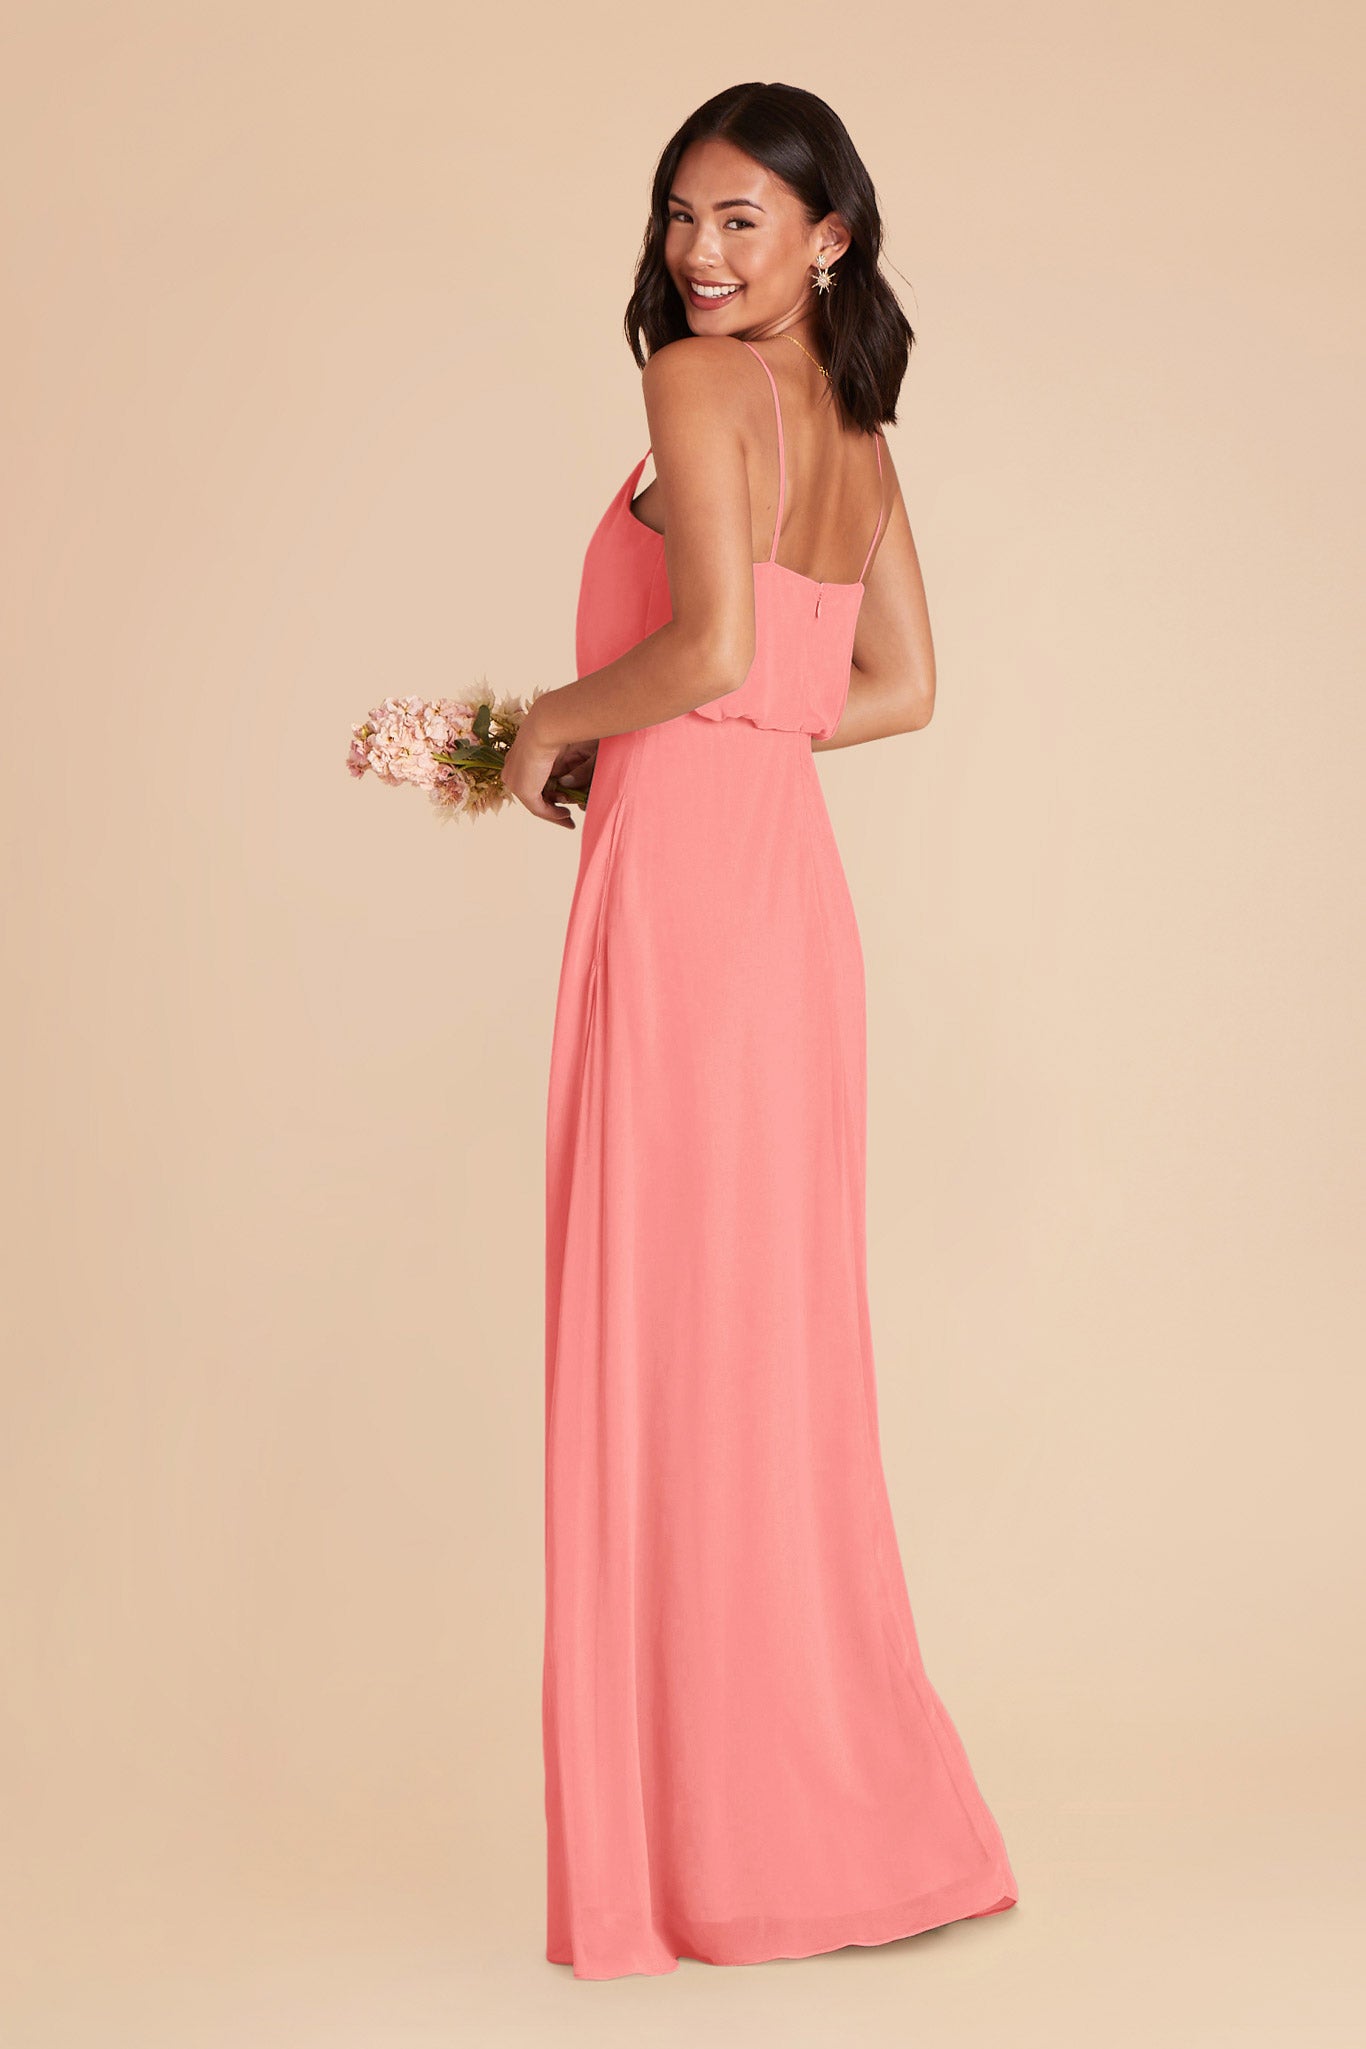 Coral Pink Gwennie Dress by Birdy Grey